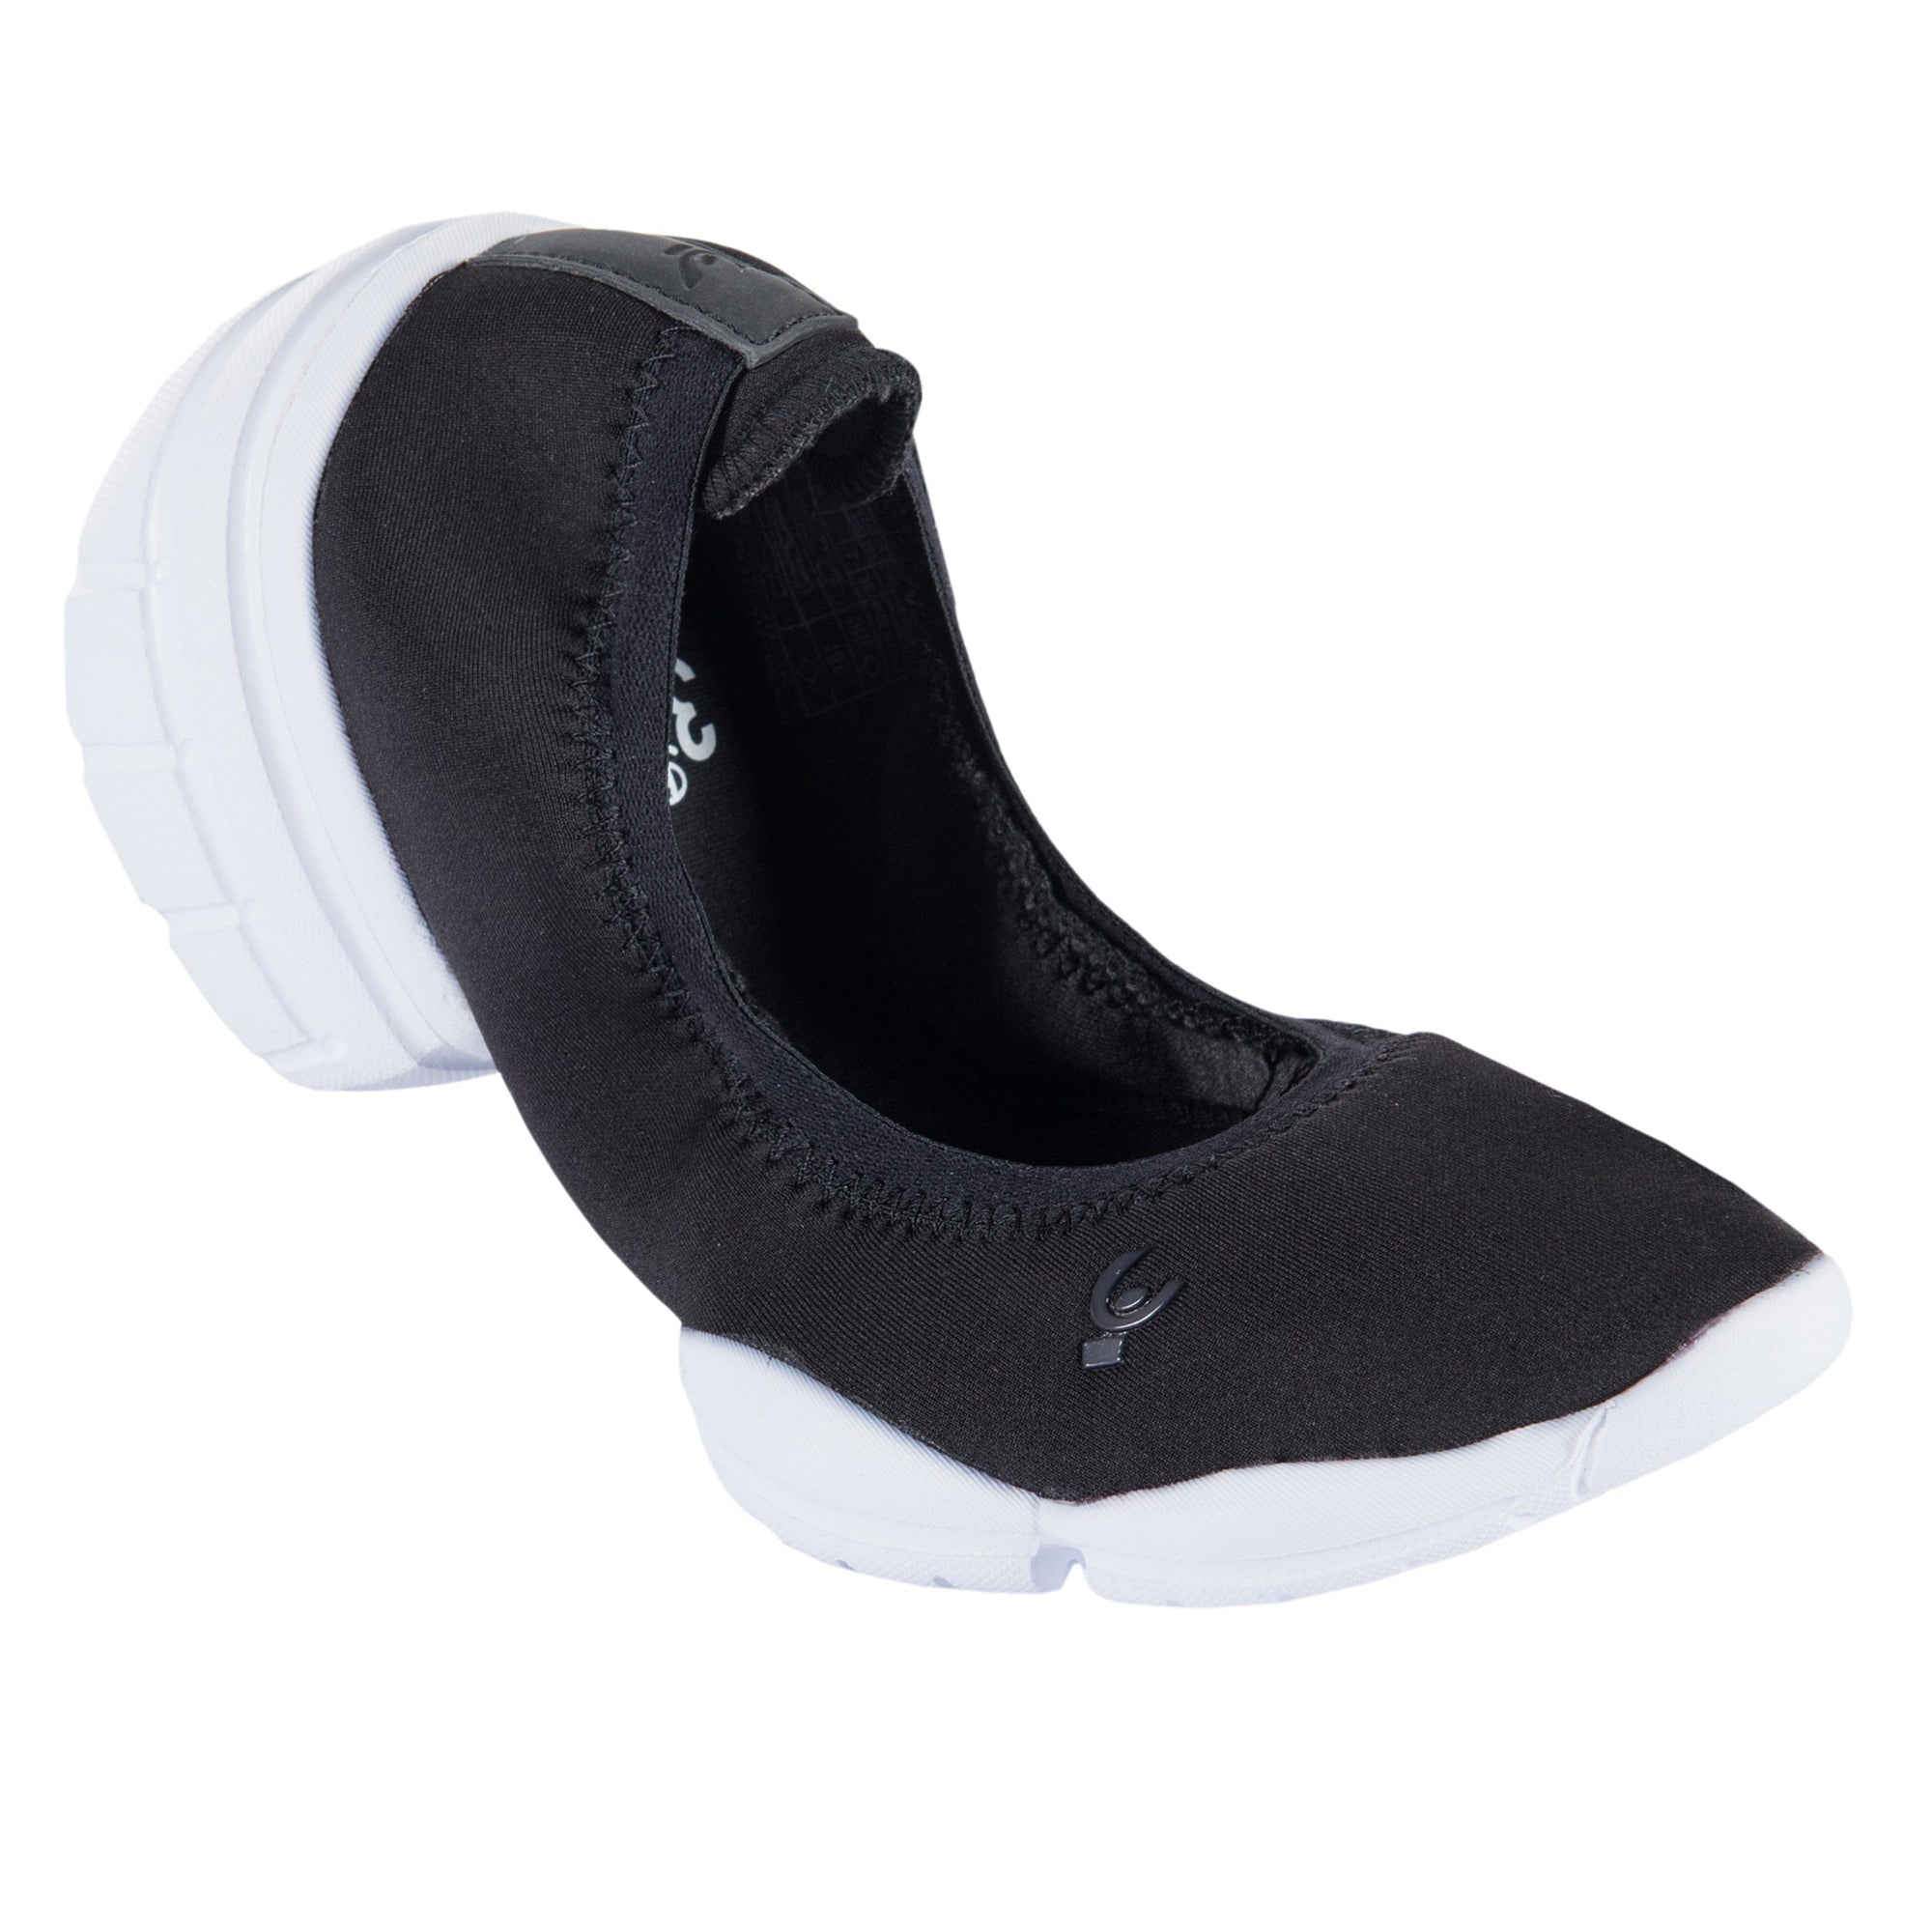 3Pro Ballerina Heel Shoes - Black 2